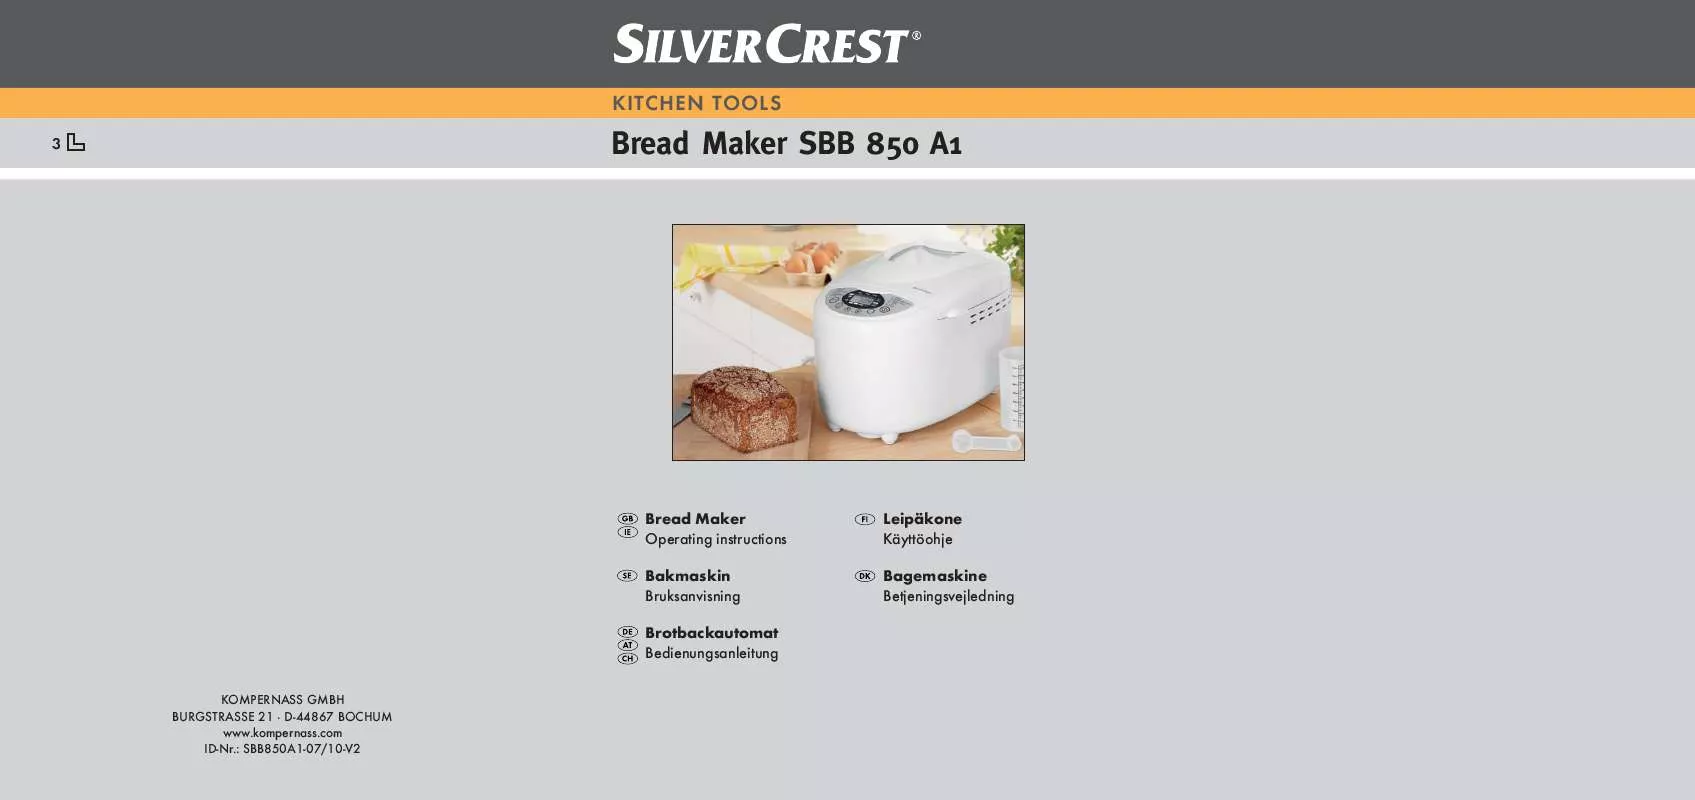 Mode d'emploi SILVERCREST SBB 850 A1 BREAD MAKER